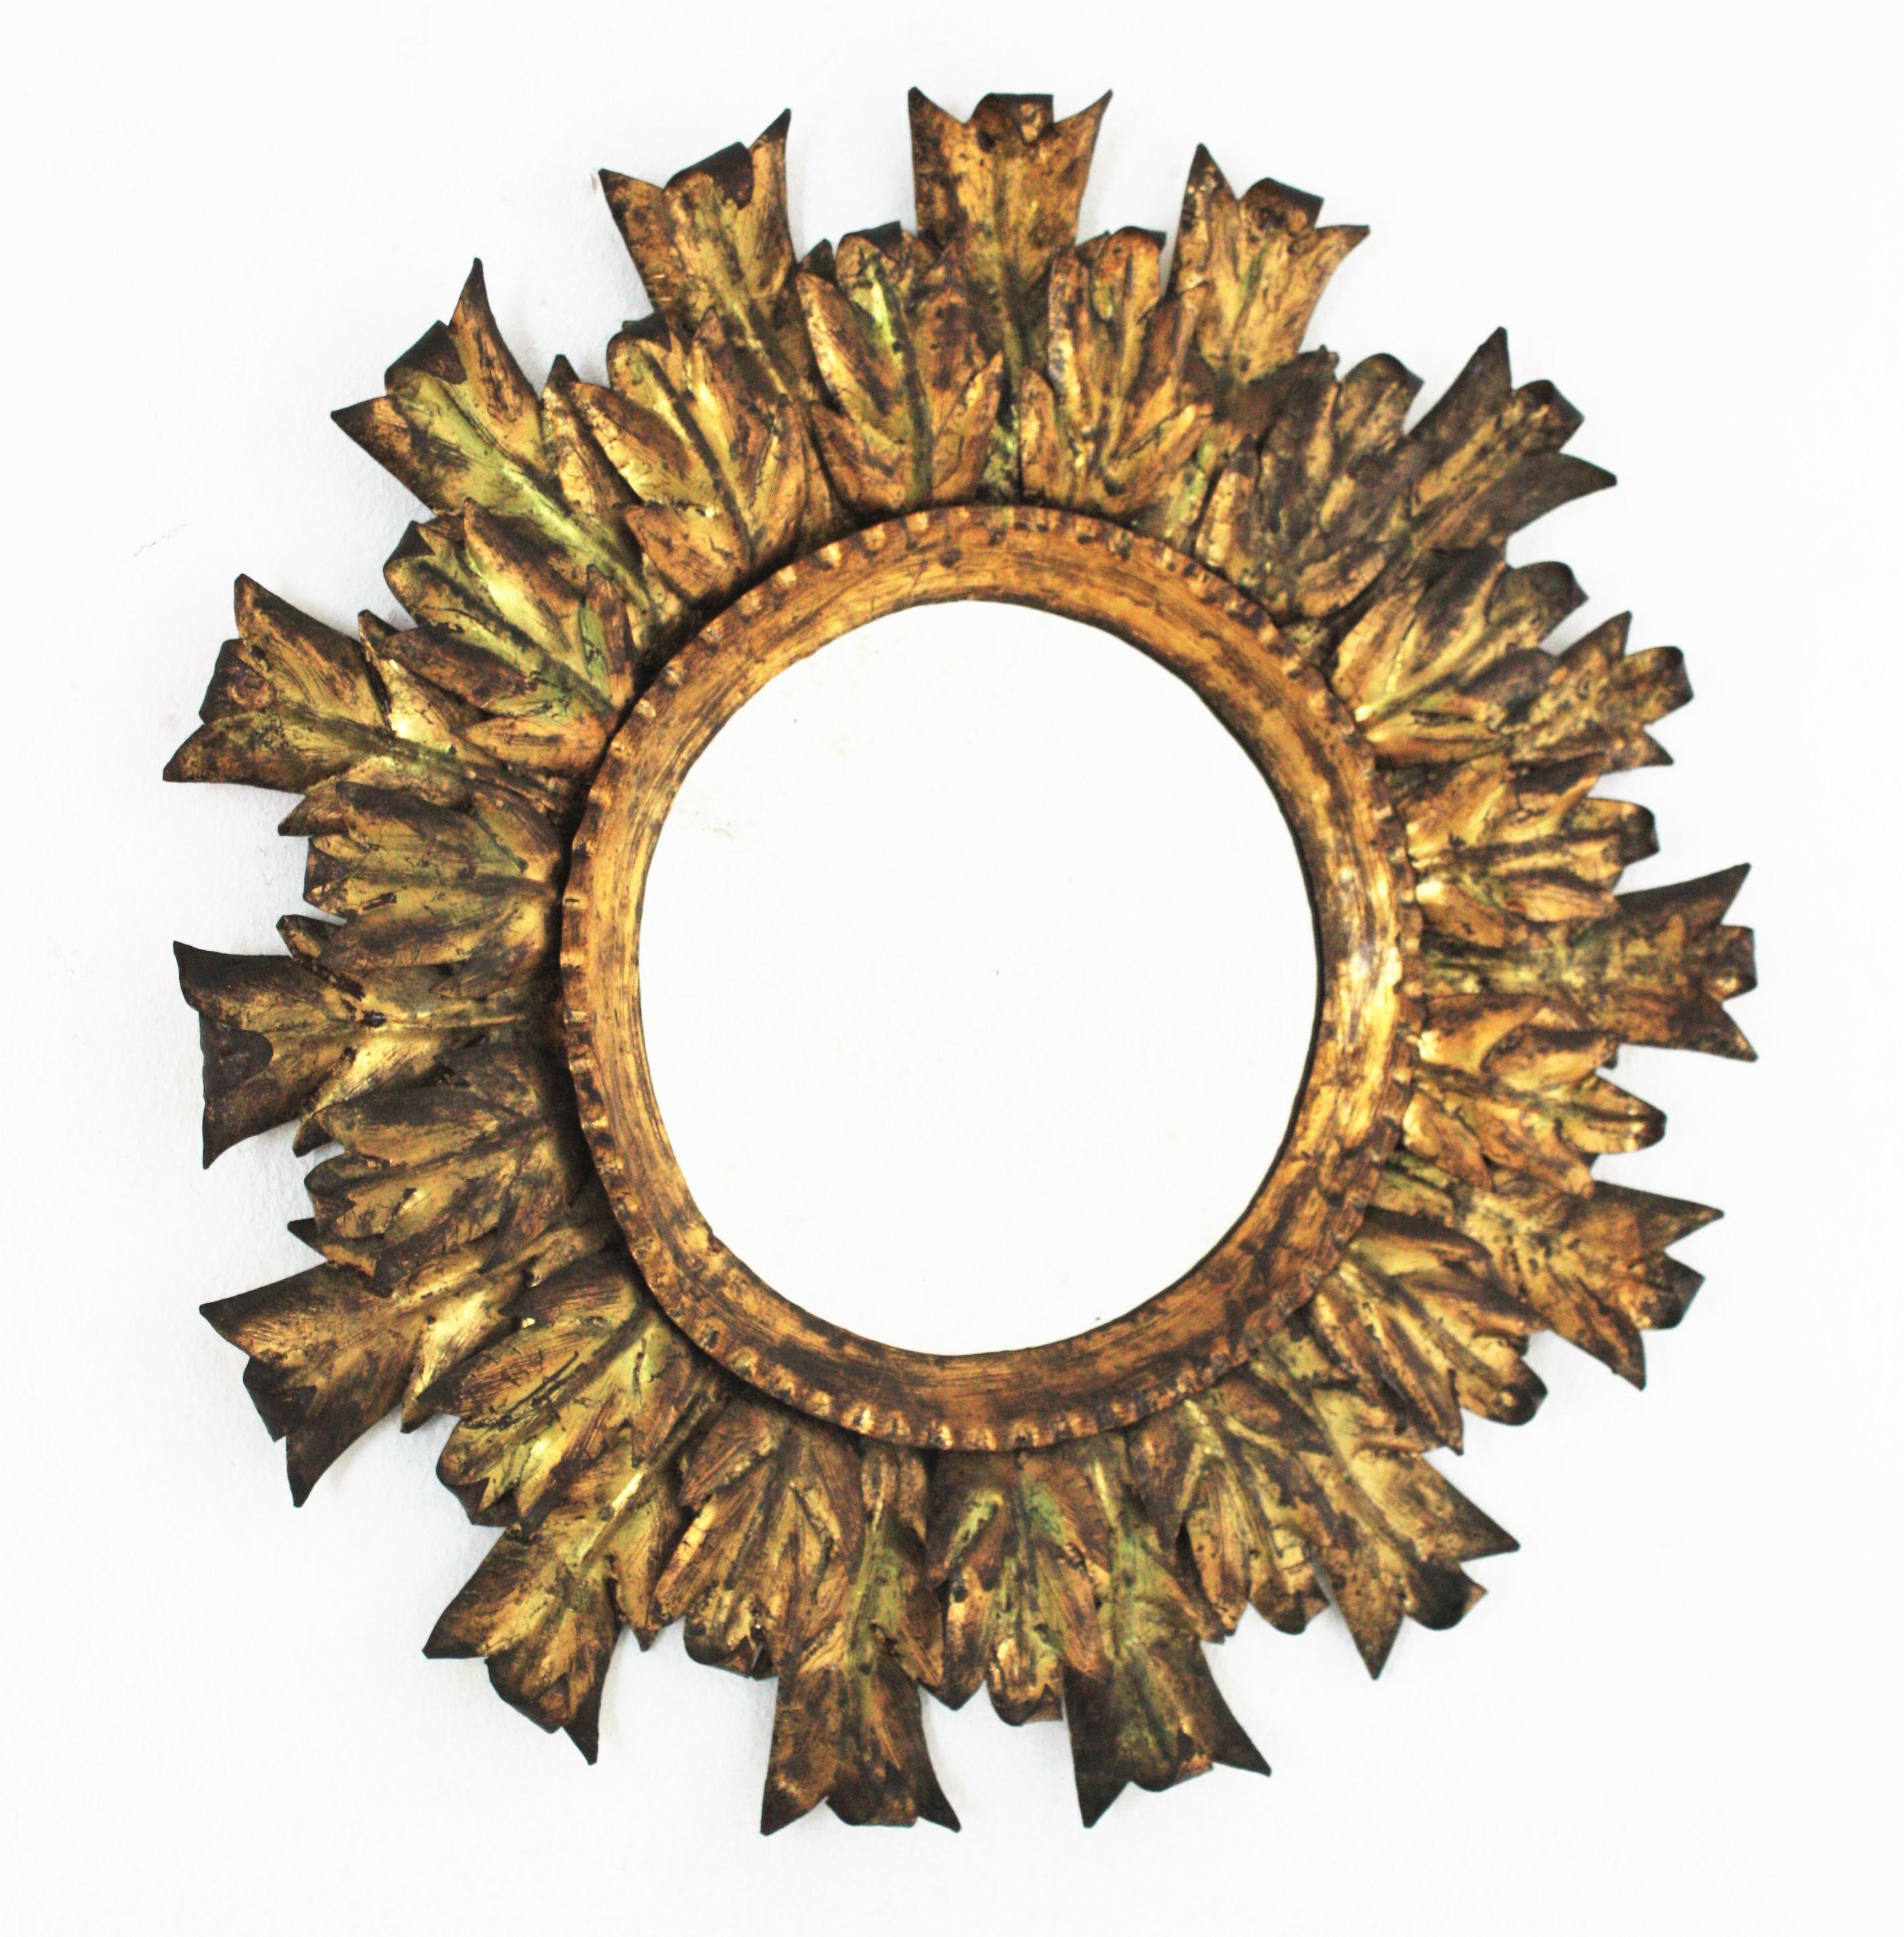 Vergoldeter Sonnenschliffspiegel mit Metallblättern, Spanien, 1940-1950er Jahre.
Dieser handgefertigte brutalistische Wandspiegel besteht aus zwei Schichten abwechselnder Blätter in verschiedenen Größen, die ein zentrales rundes Glas umgeben. Es hat